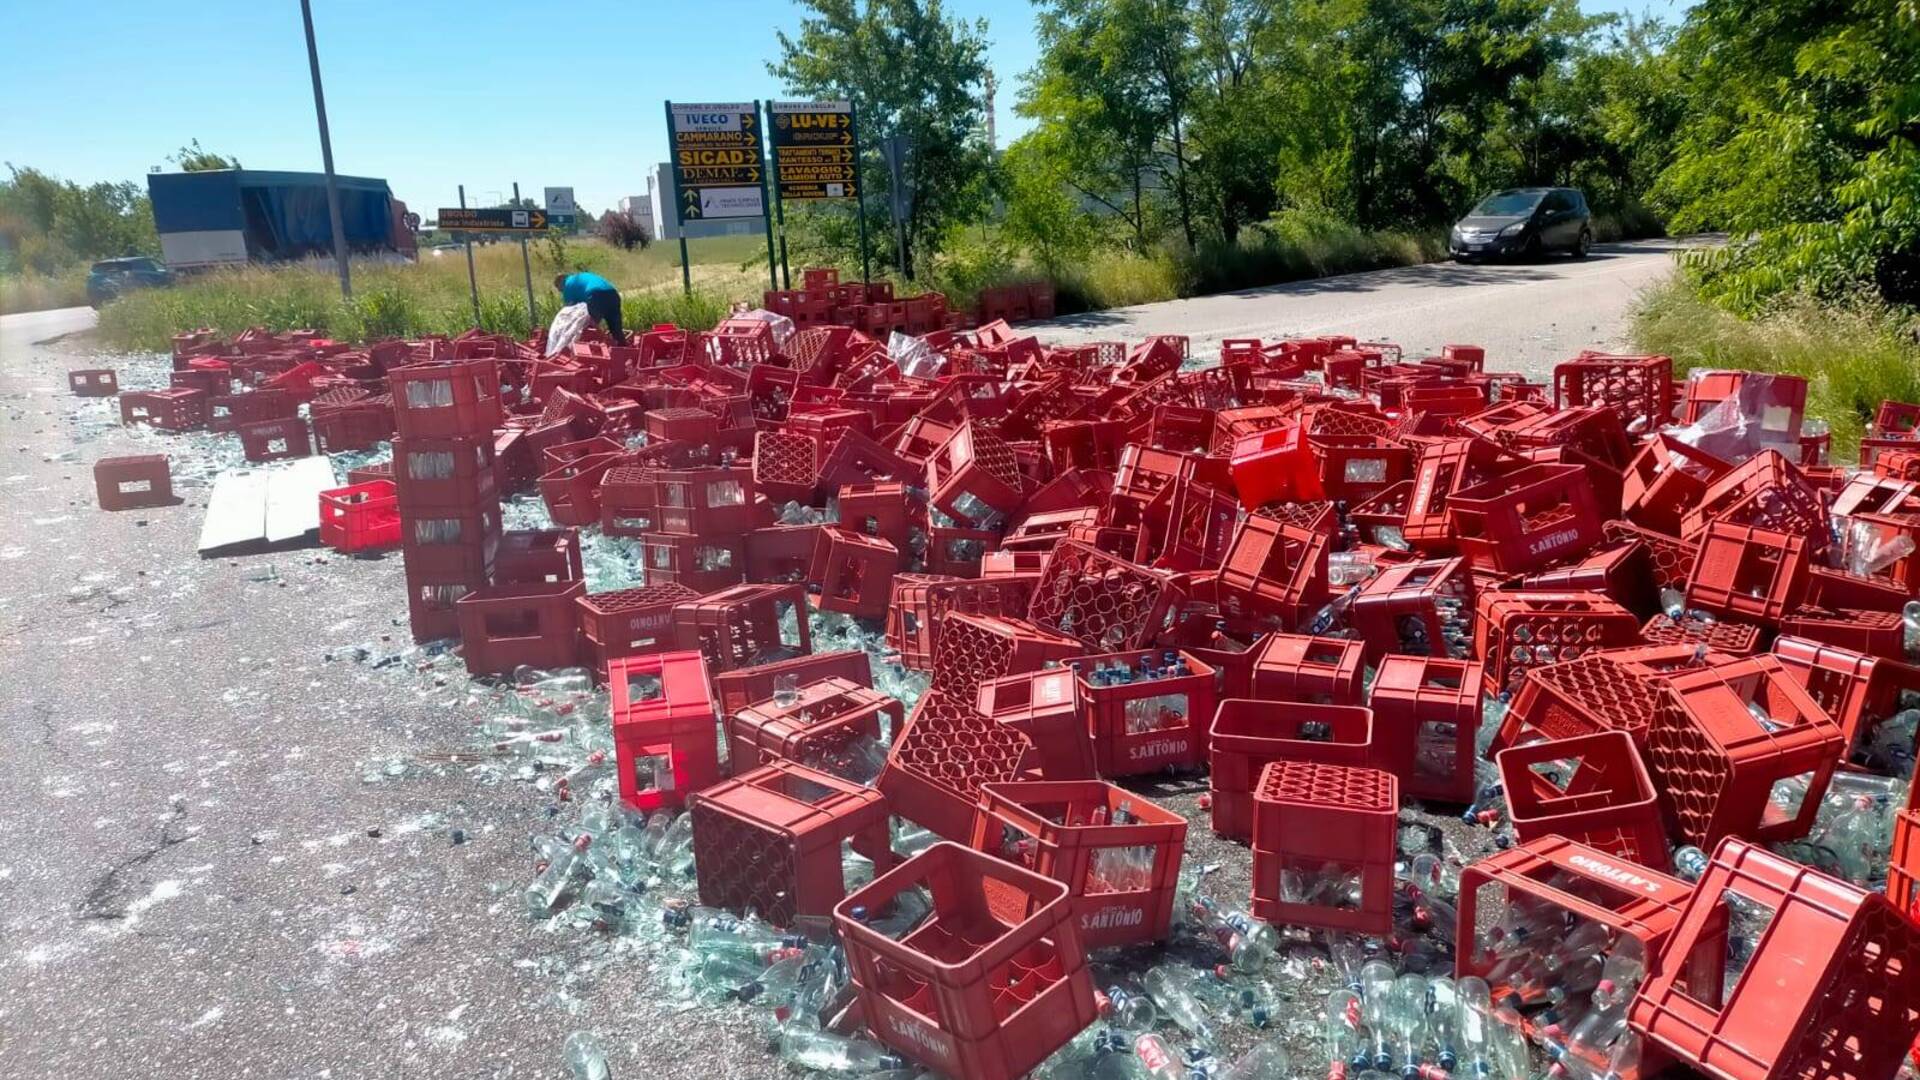 Centinaia di bottiglie d’acqua minerale in frantumi: camion perde il carico alla rotonda di Origgio